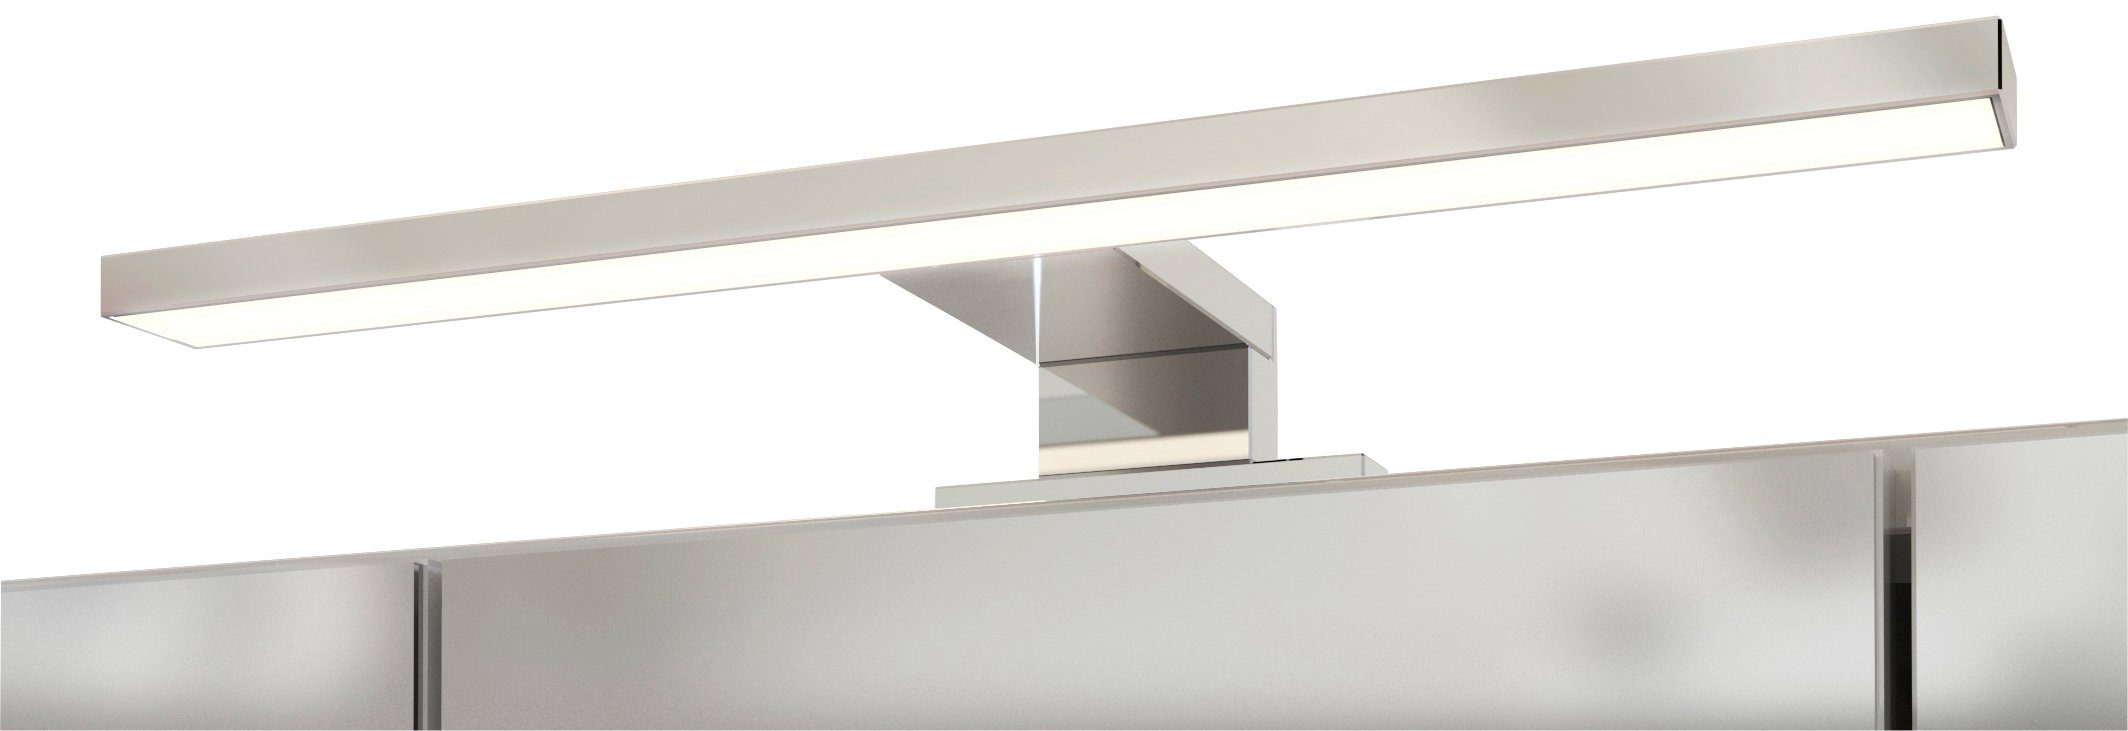 HELD | Spiegelschrank MÖBEL weiß/weiß weiß Inklusive LED-Beleuchtung Livorno